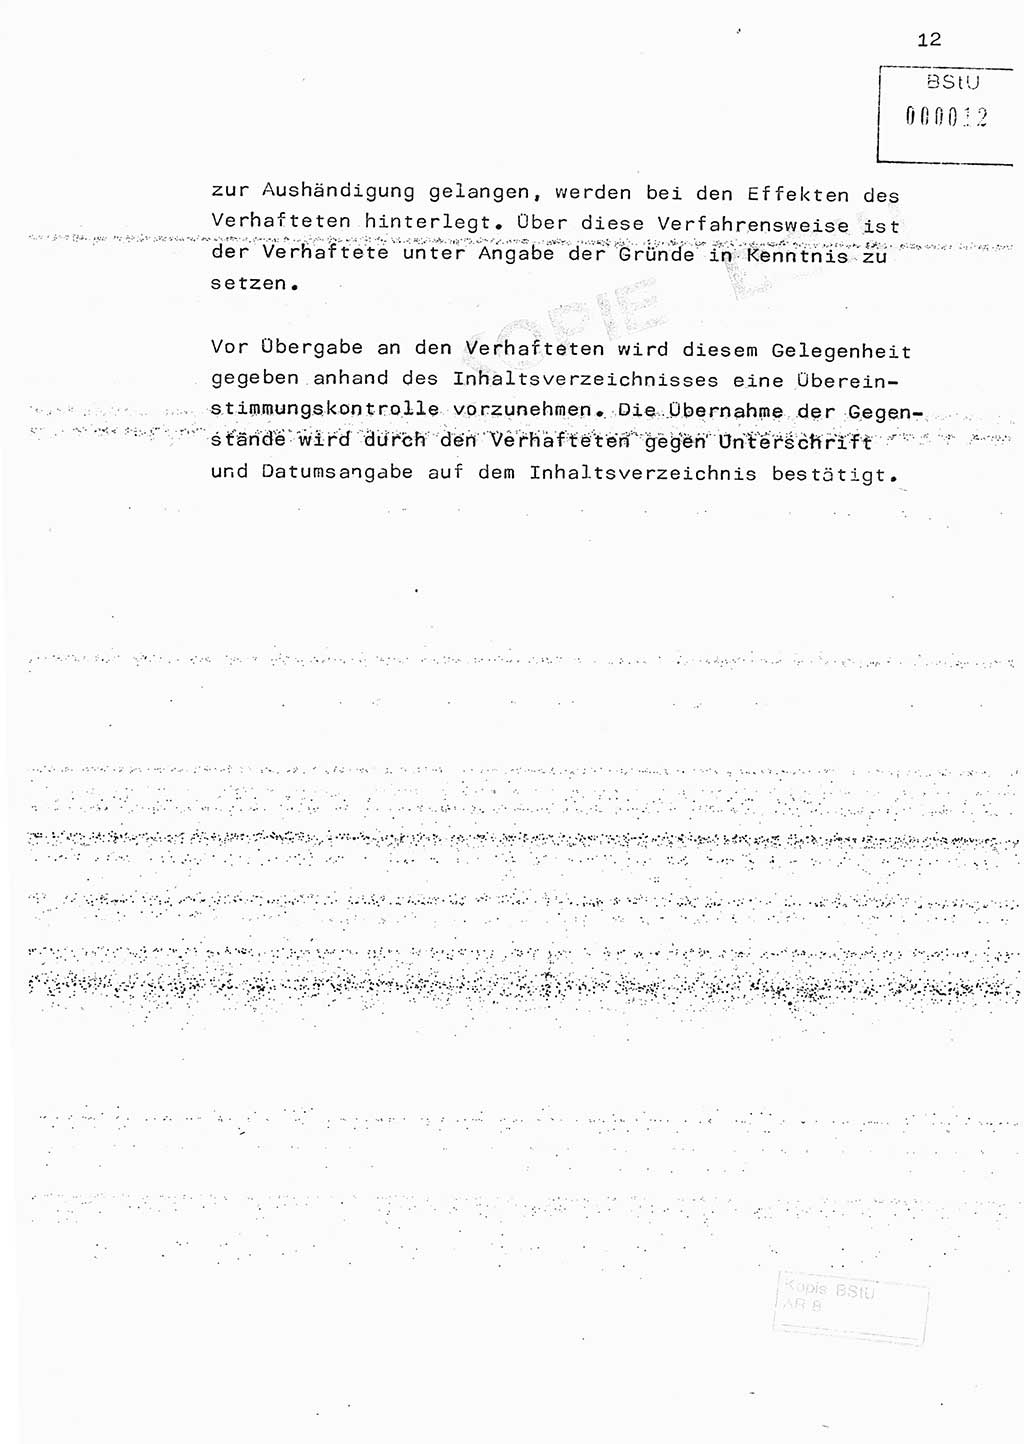 Fachschulabschlußarbeit Hauptmann Edwin Buhse (Abt. ⅩⅣ), Ministerium für Staatssicherheit (MfS) [Deutsche Demokratische Republik (DDR)], Abteilung ⅩⅣ, o.D., o.O, o.J., ca. 1986 wg. Bez. DA 2/86, Seite 12 (FS-Abschl.-Arb. MfS DDR Abt. ⅩⅣ 1986, S. 12)